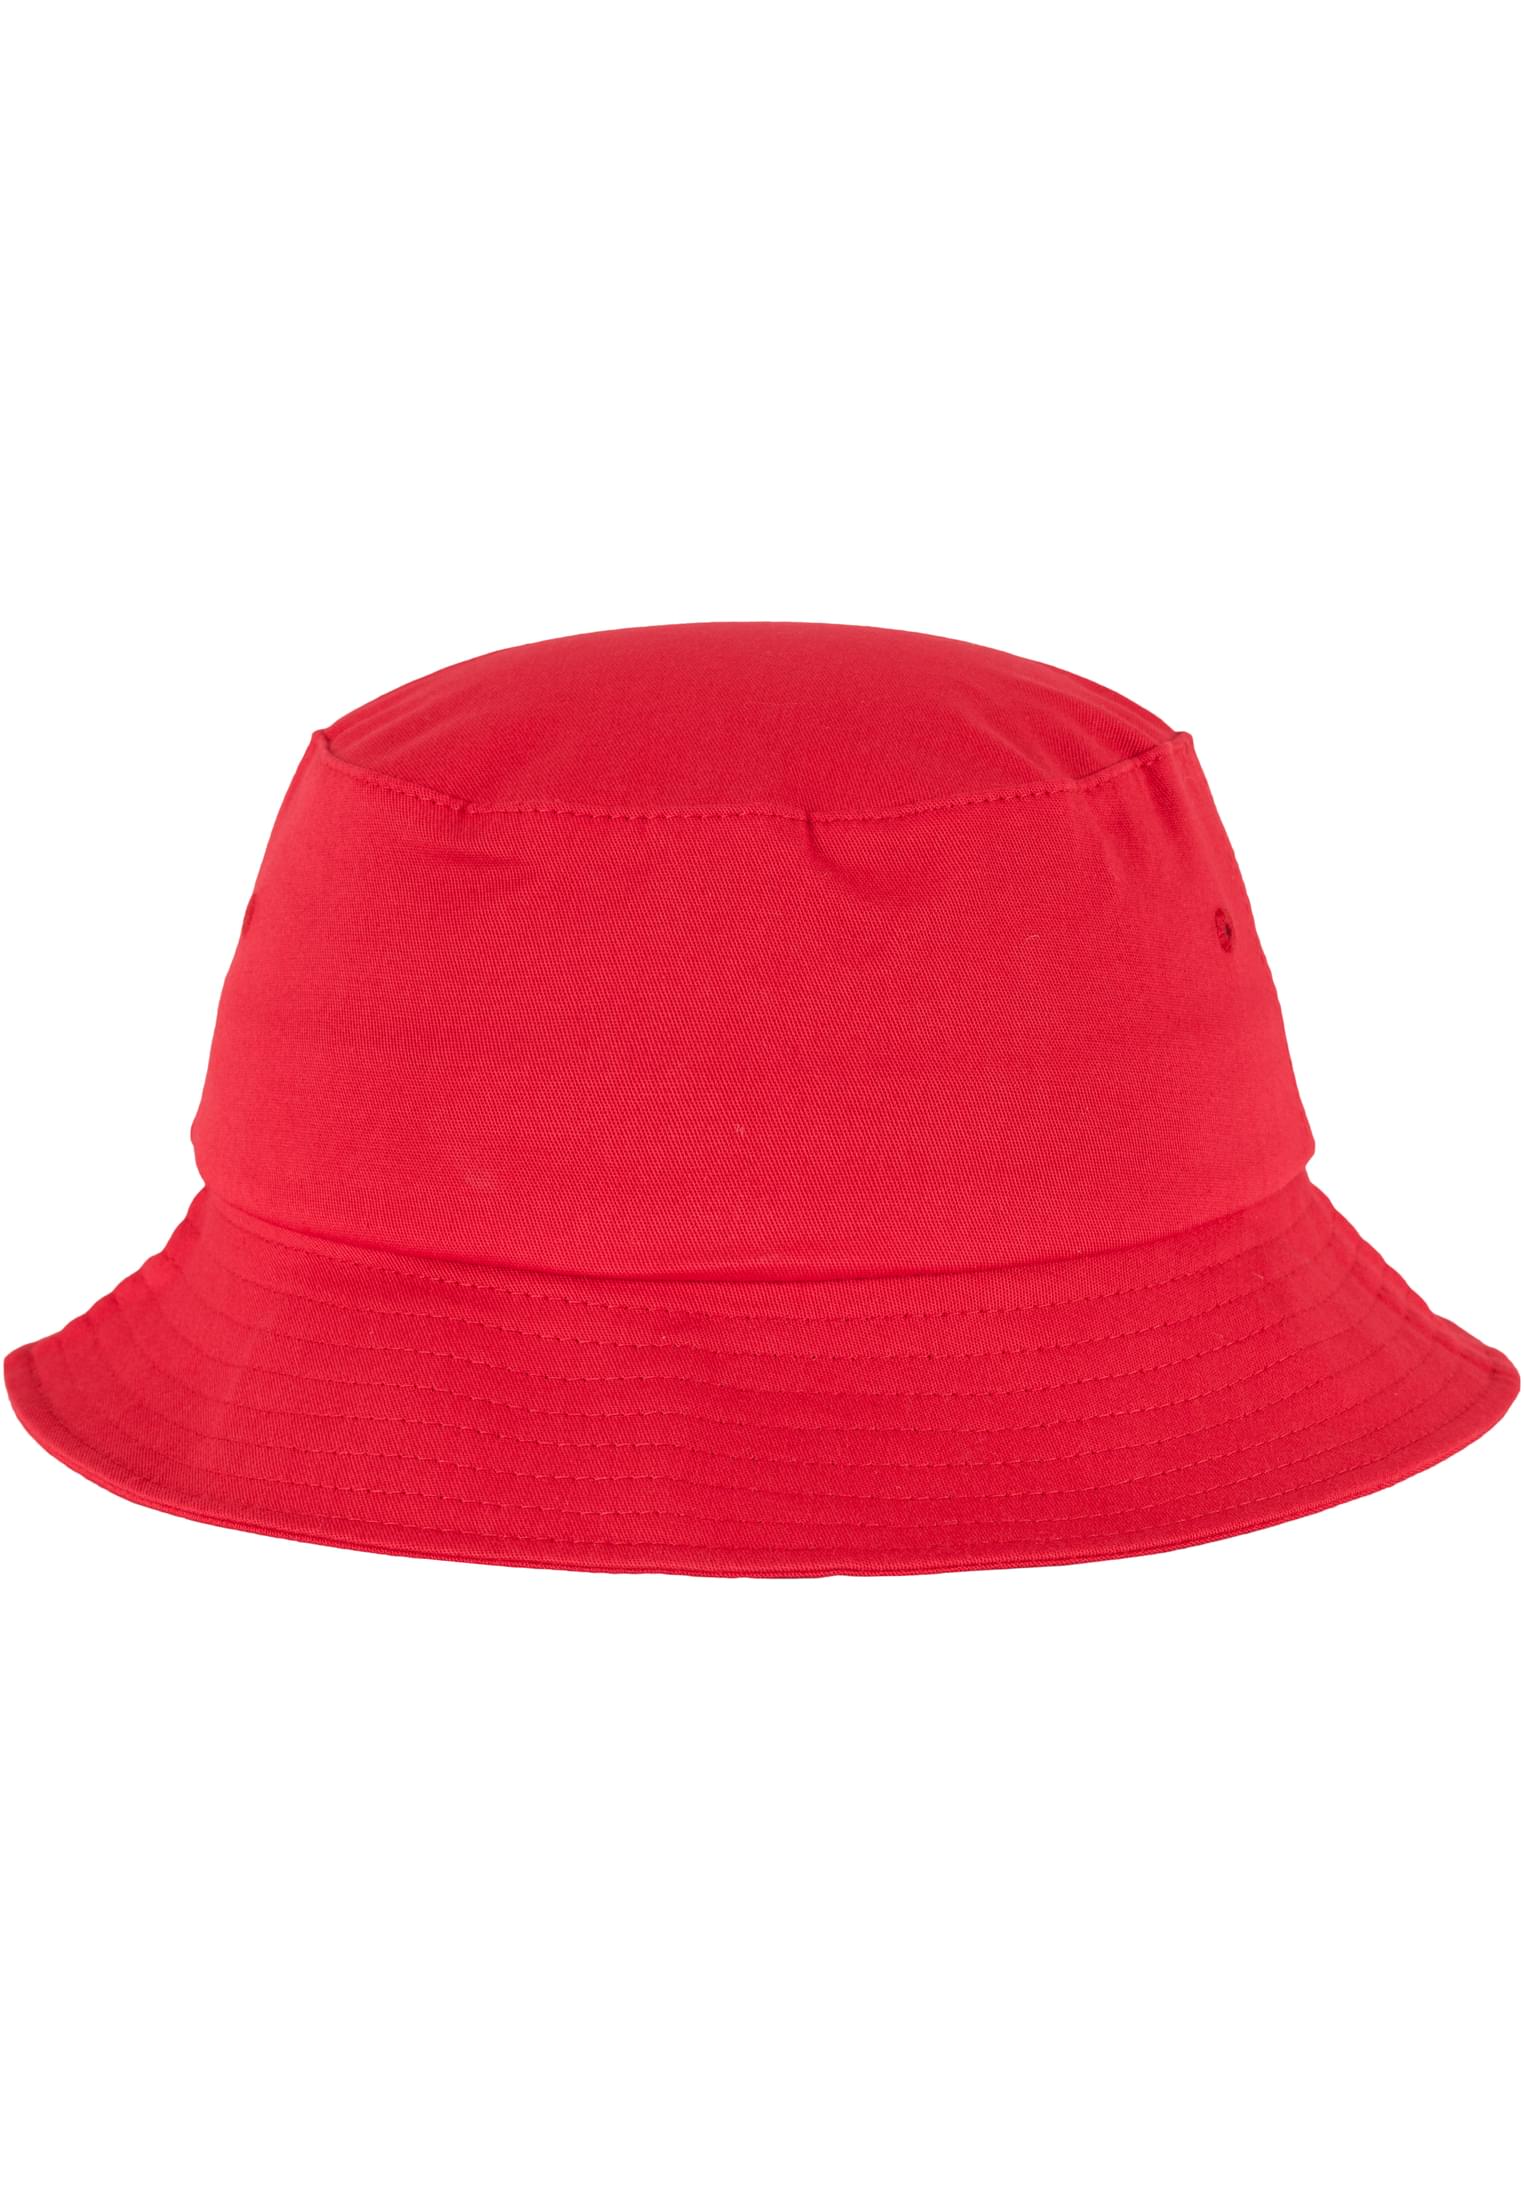 Hat-5003 Cotton Bucket Flexfit Twill